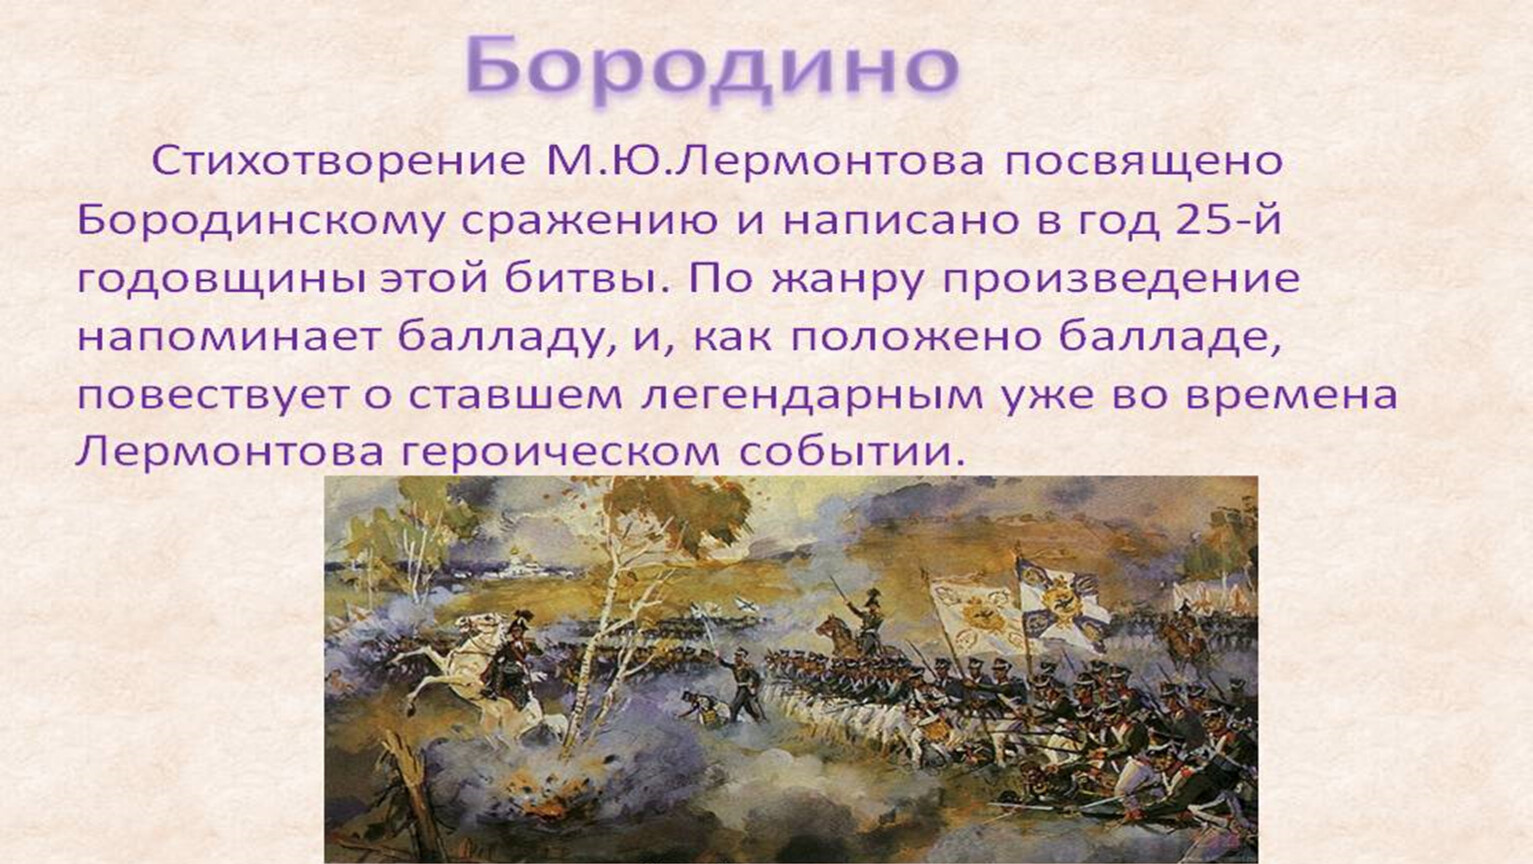 Какое событие по словам автора. Бородинское сражение Бородино Лермонтов.